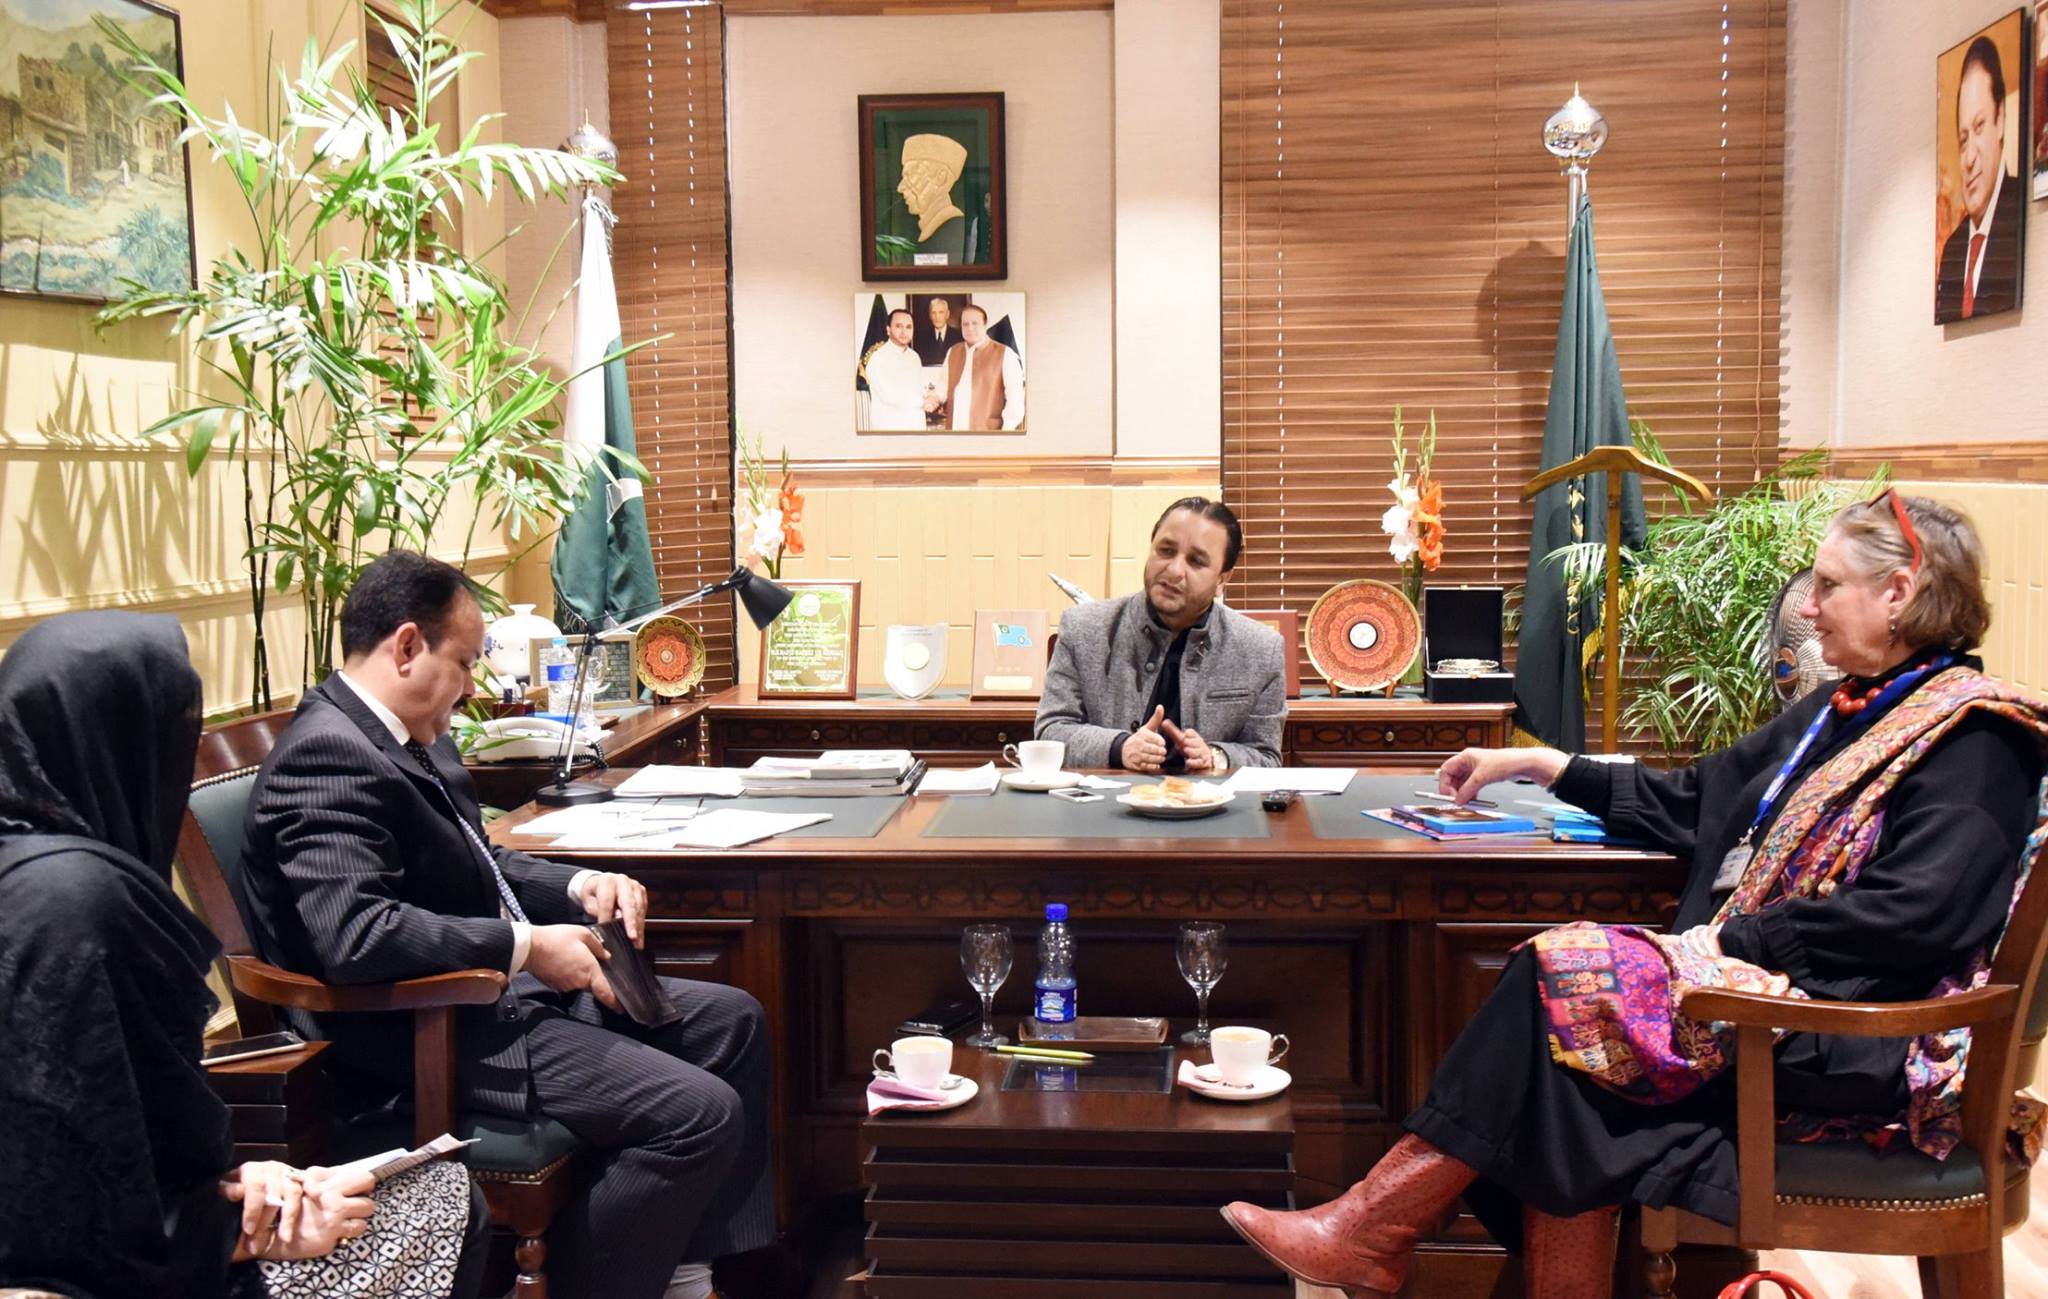 اسلام آباد: وزیر اعلیٰ گلگت بلتستان کی پاکستان میں یونیسف کی سربراہ انجیلینہ کیر سے ملاقات